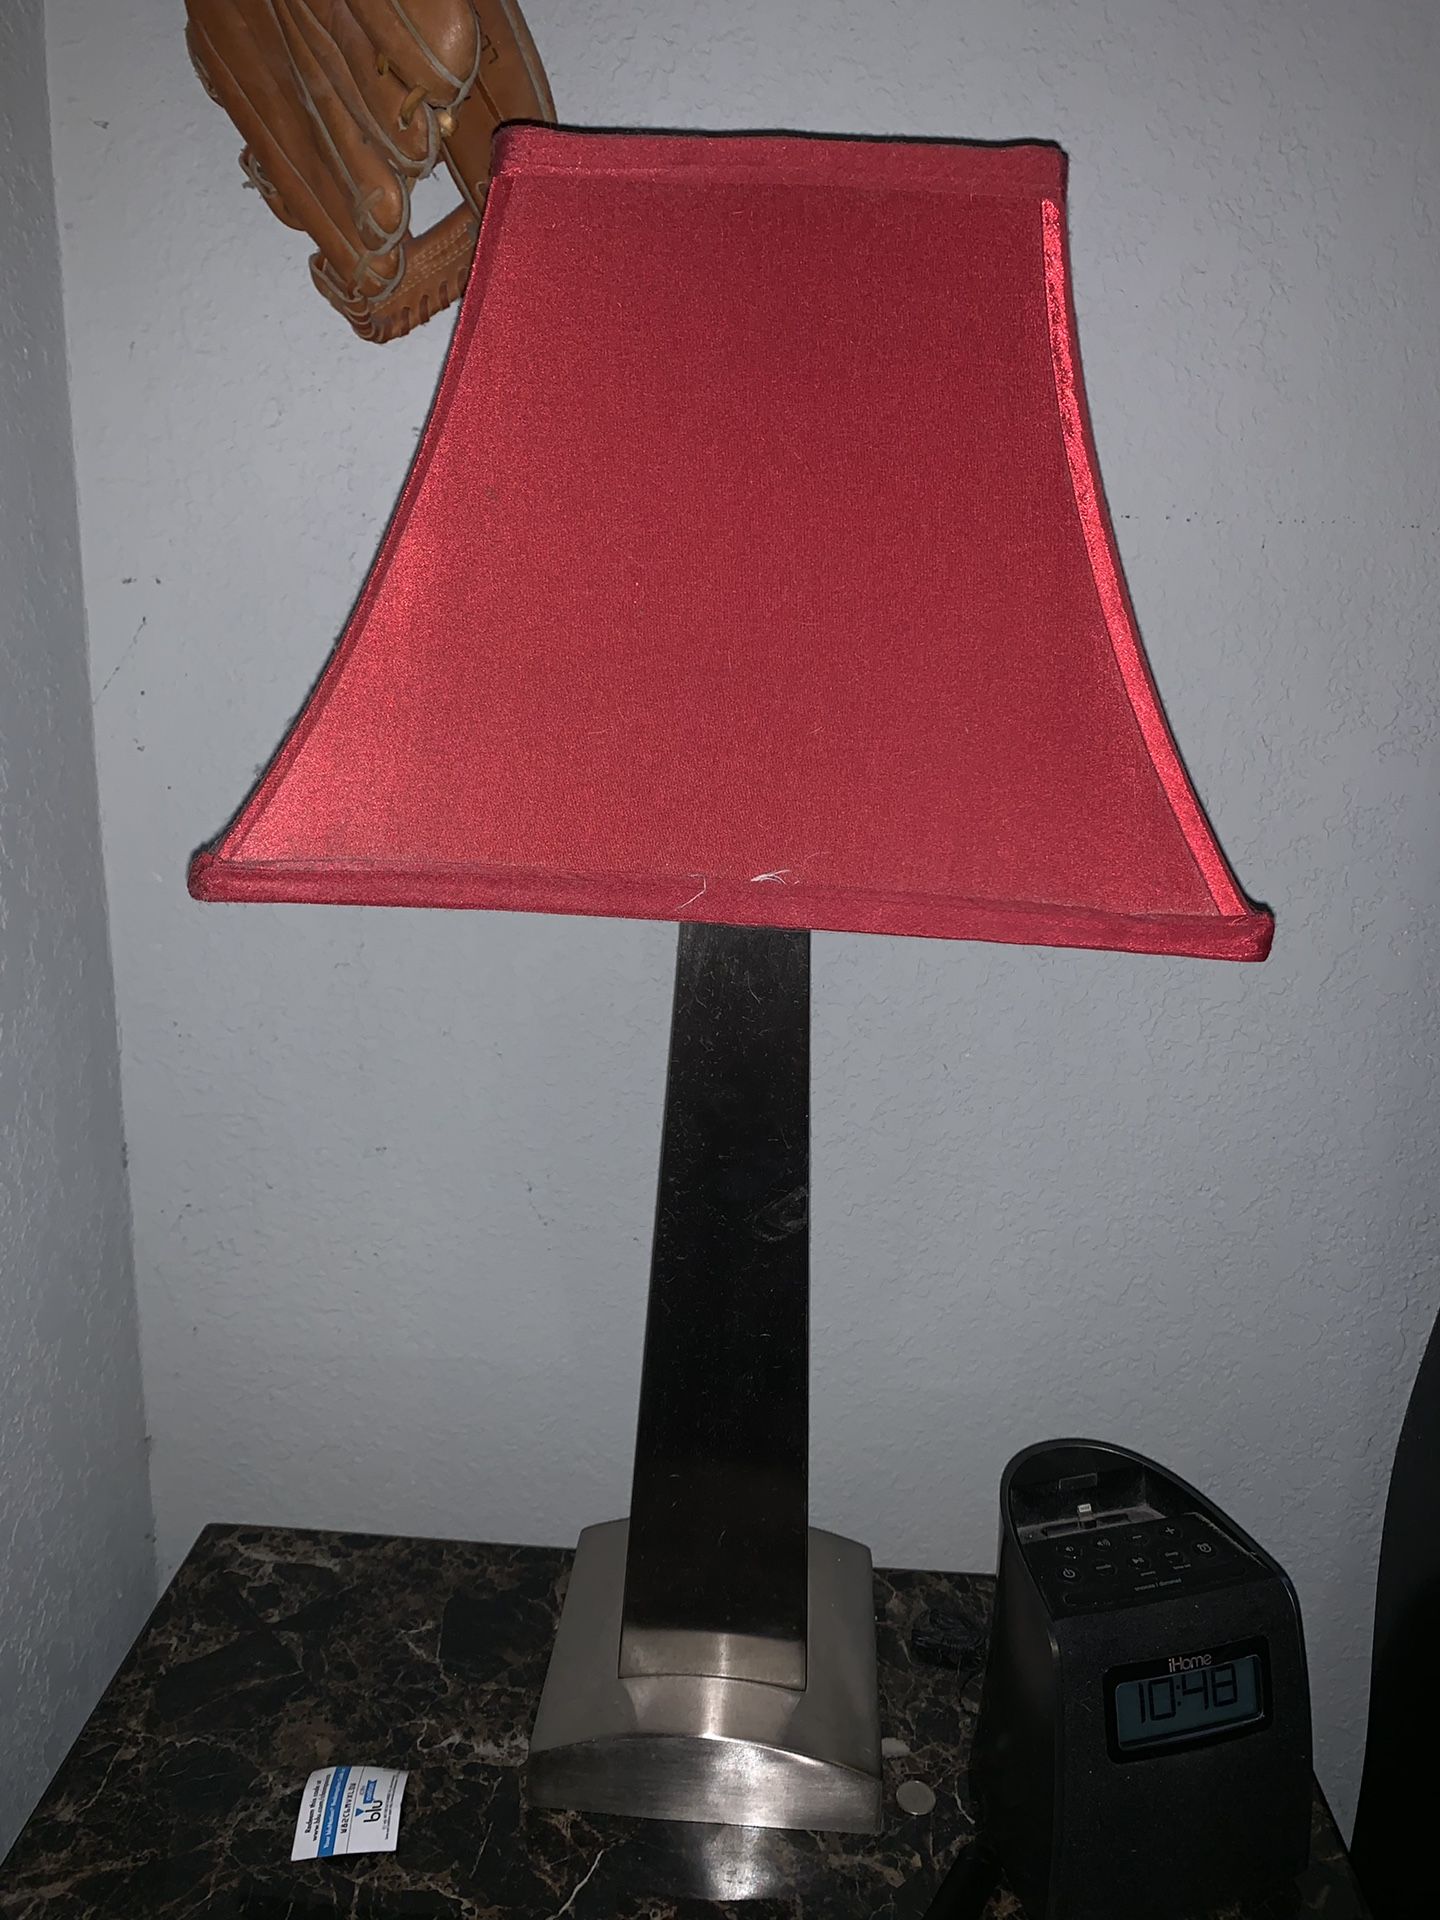 Bedroom lamps